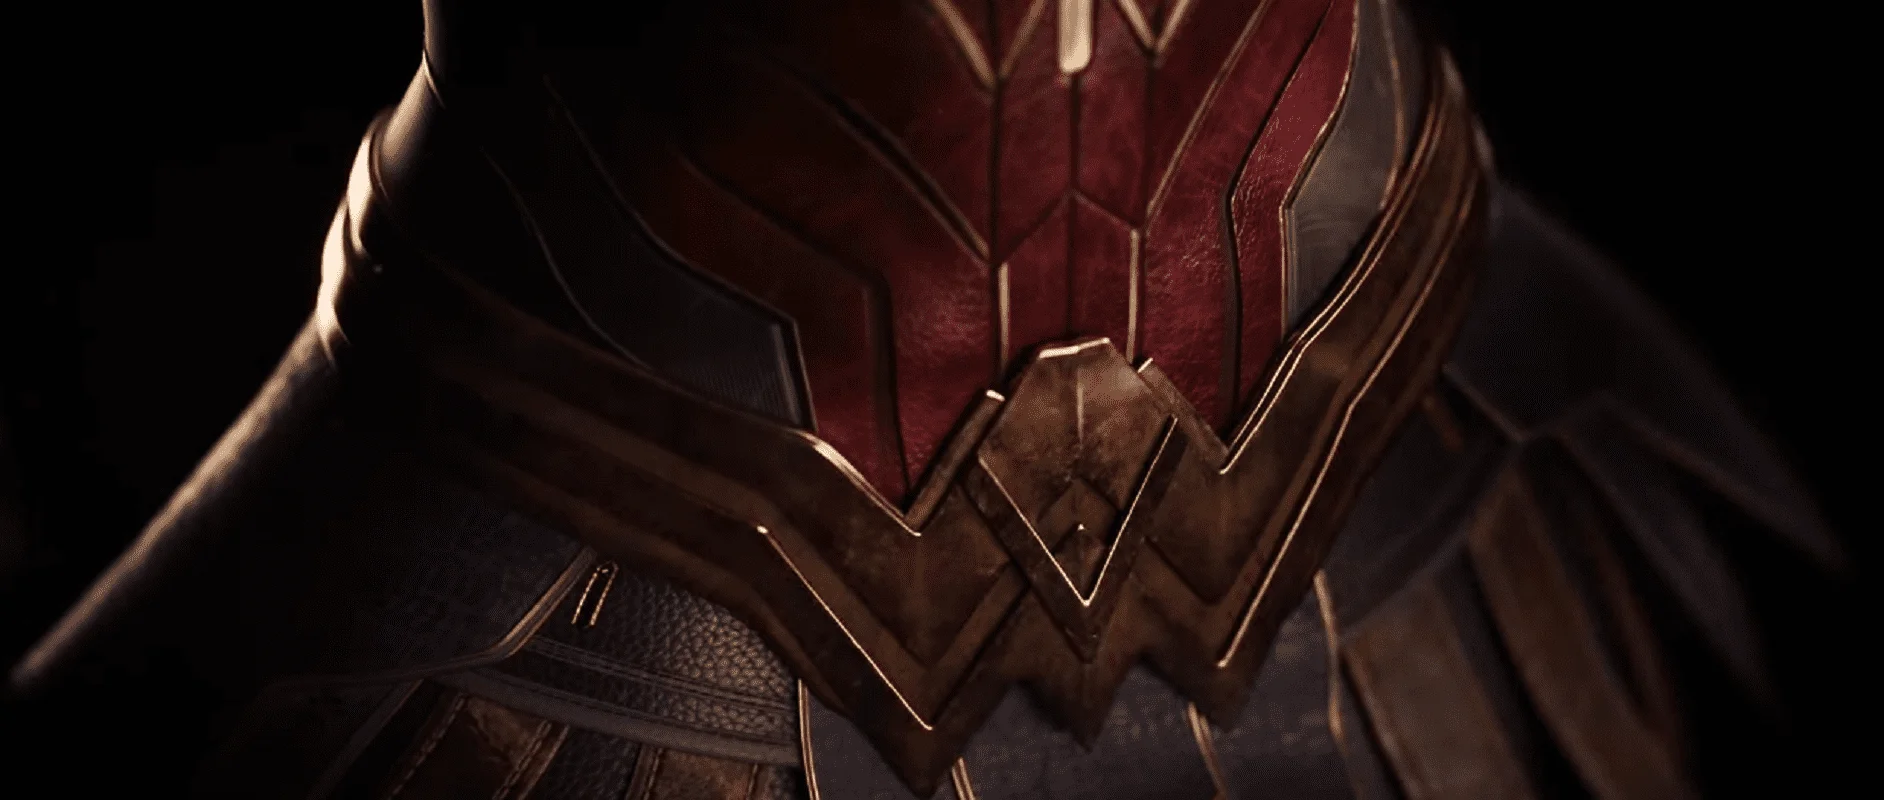 Couverture : capture d'écran du jeu Wonder Woman